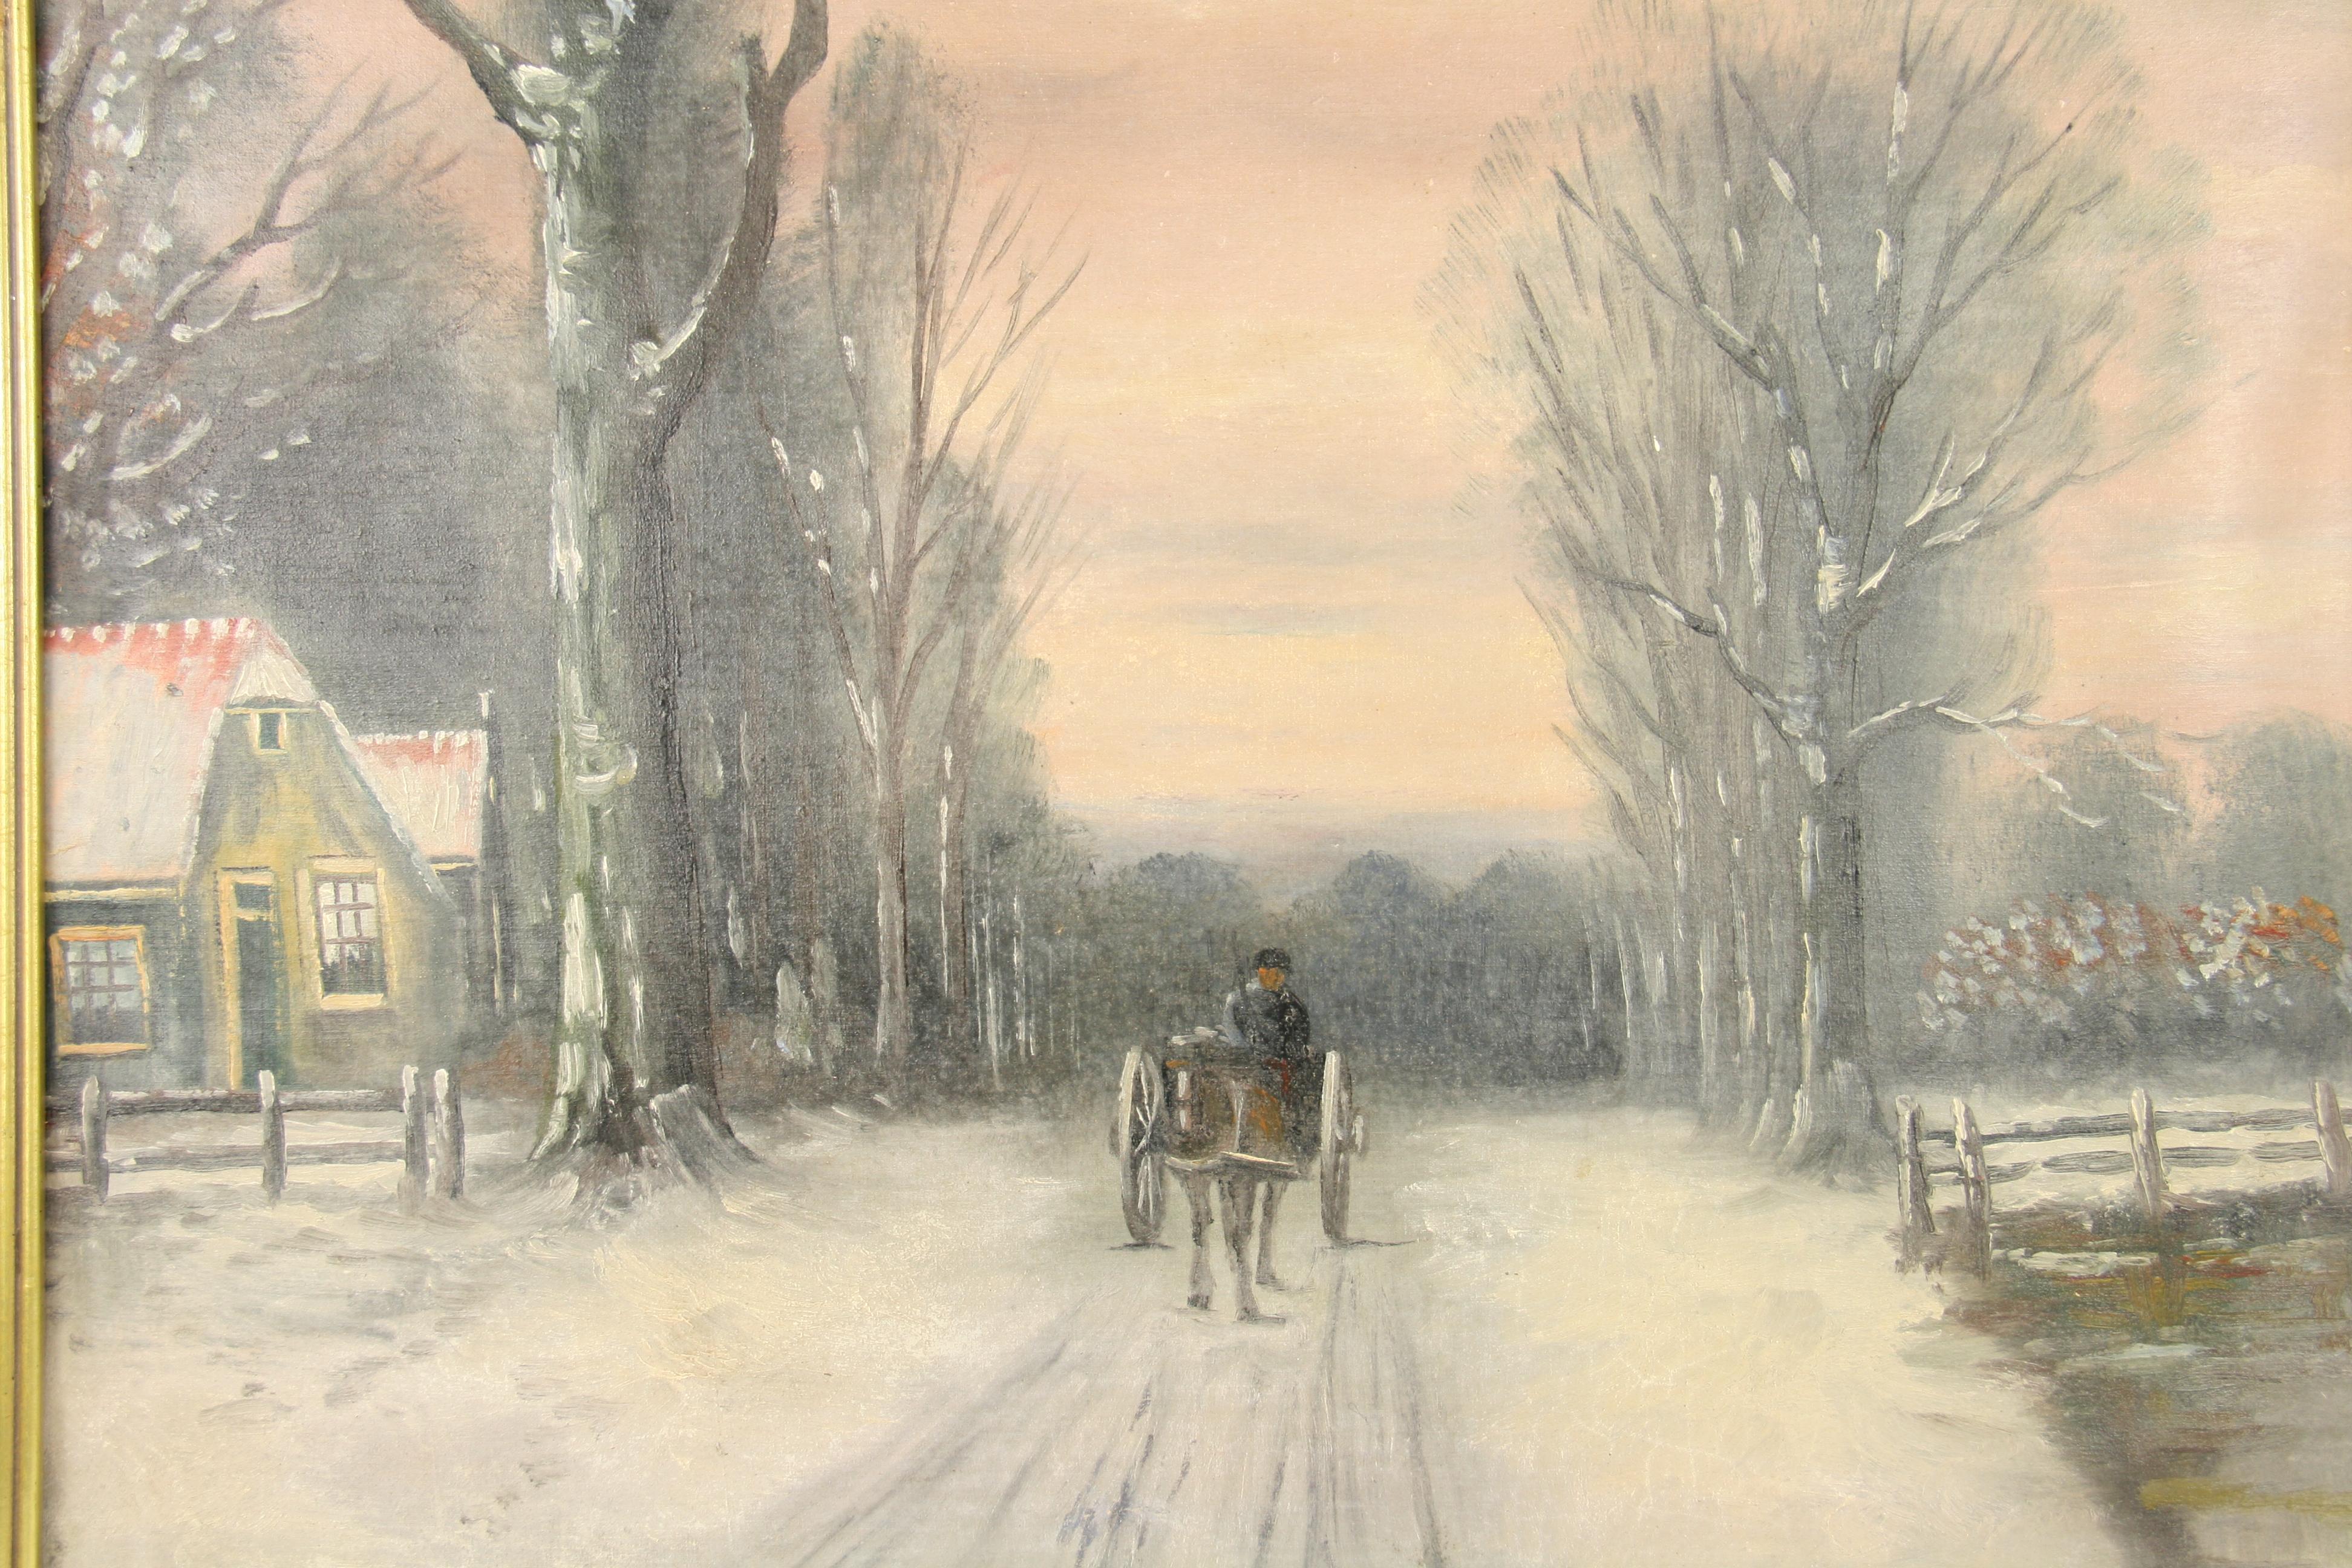 2568 Antikes impressionistisches Ölgemälde einer Pferdekutsche auf einer schneebedeckten Straße
Eingerahmt in einen historischen Rahmen
Segeltuch auf Karton aufgebracht 
Bildgröße 17.5x23.5